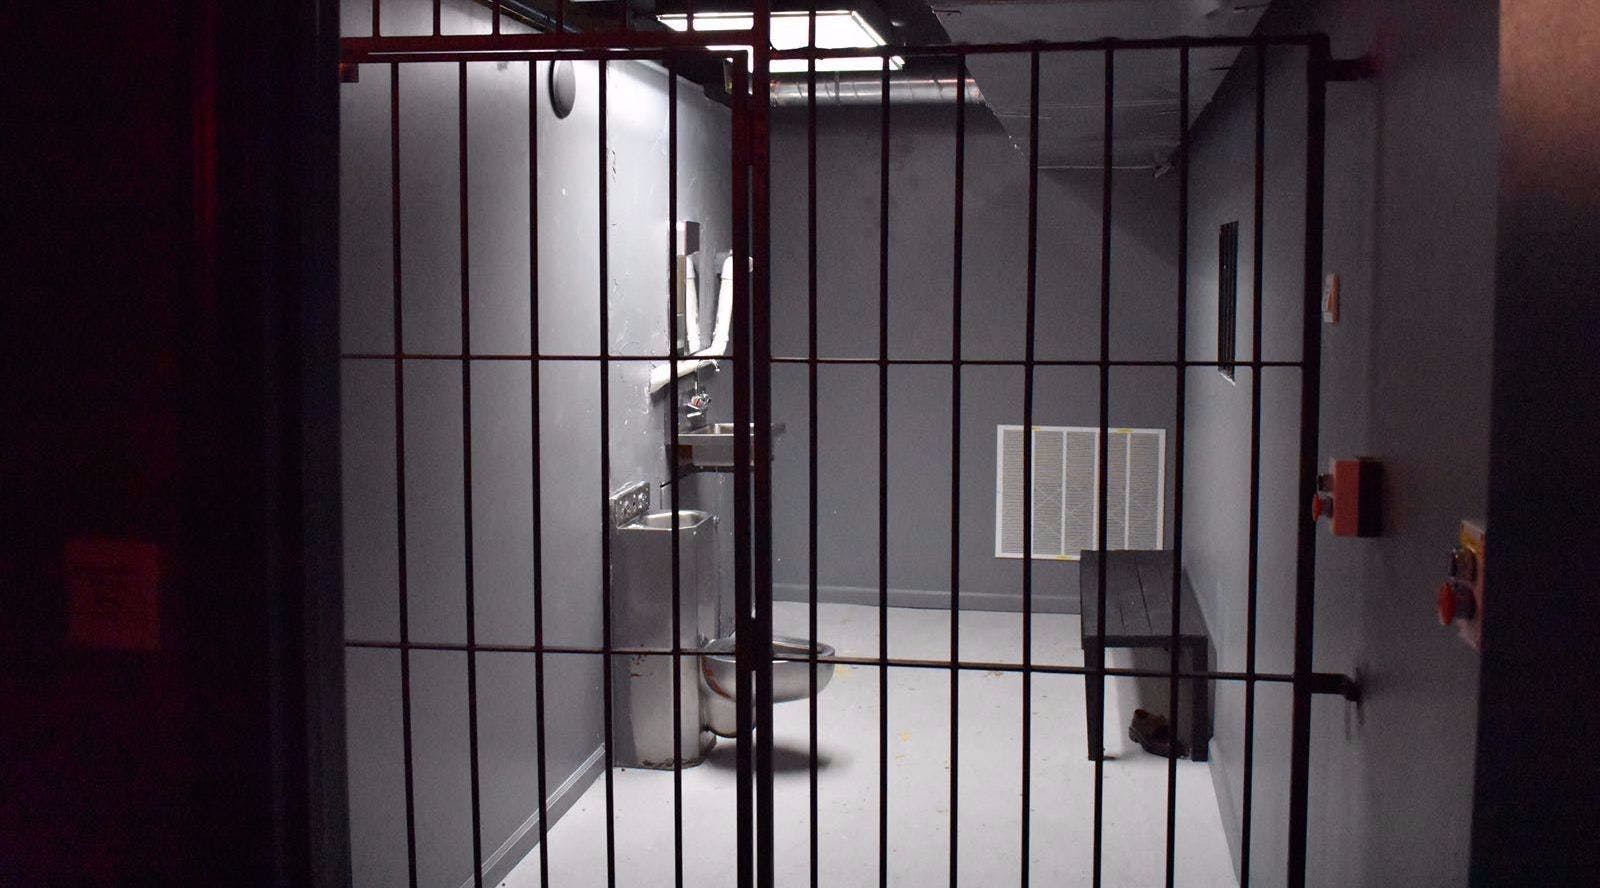 Thai prison escape room game in Philadelphia Musement